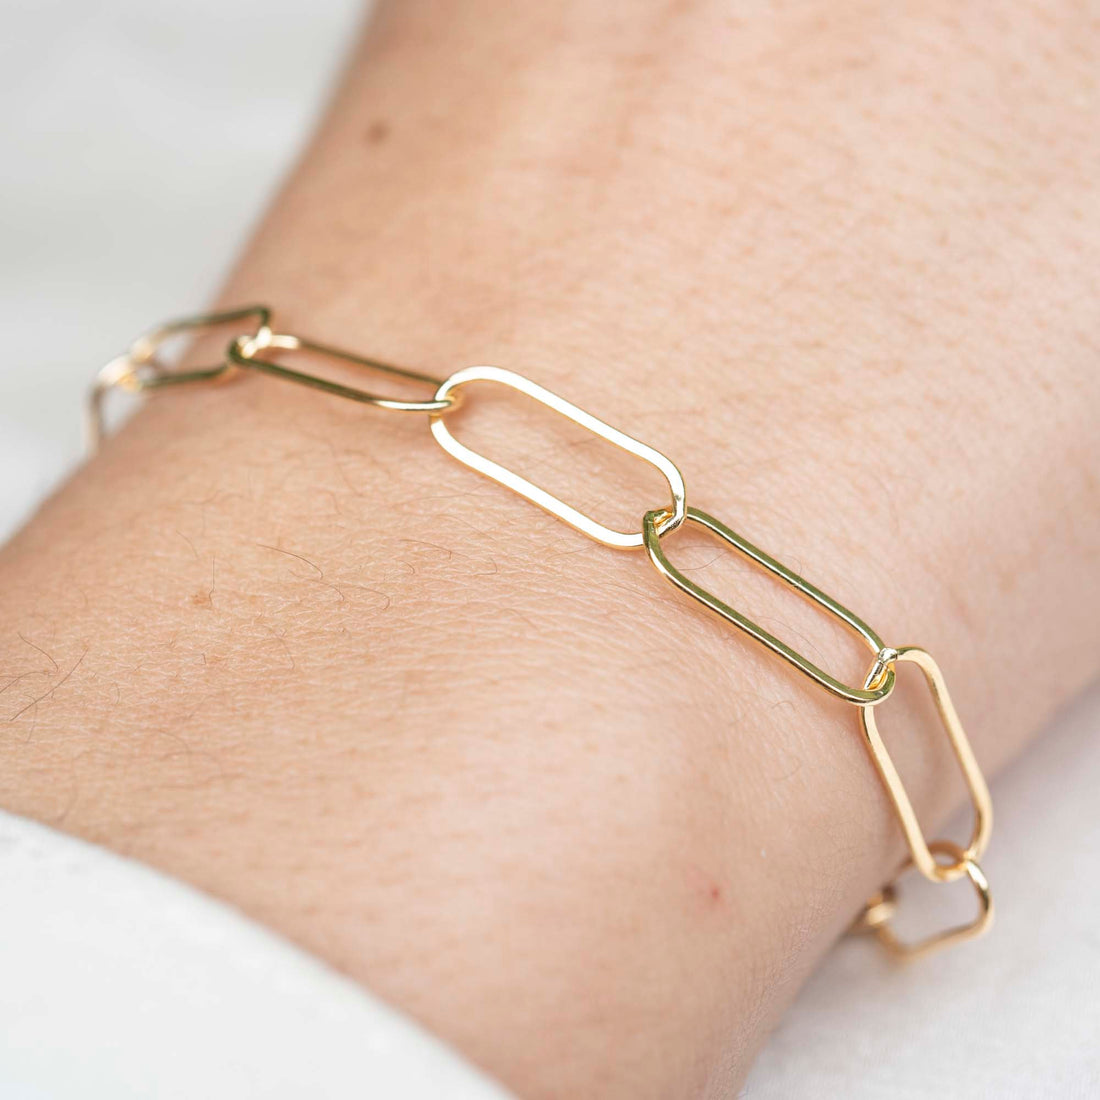 Gold Loops Bracelet, 14k Gold Bracelet, Simple Gold Bracelet, Chain and Link Bracelet, Bracelet, Chain Bracelet, Bold Bracelet, Gold Filled